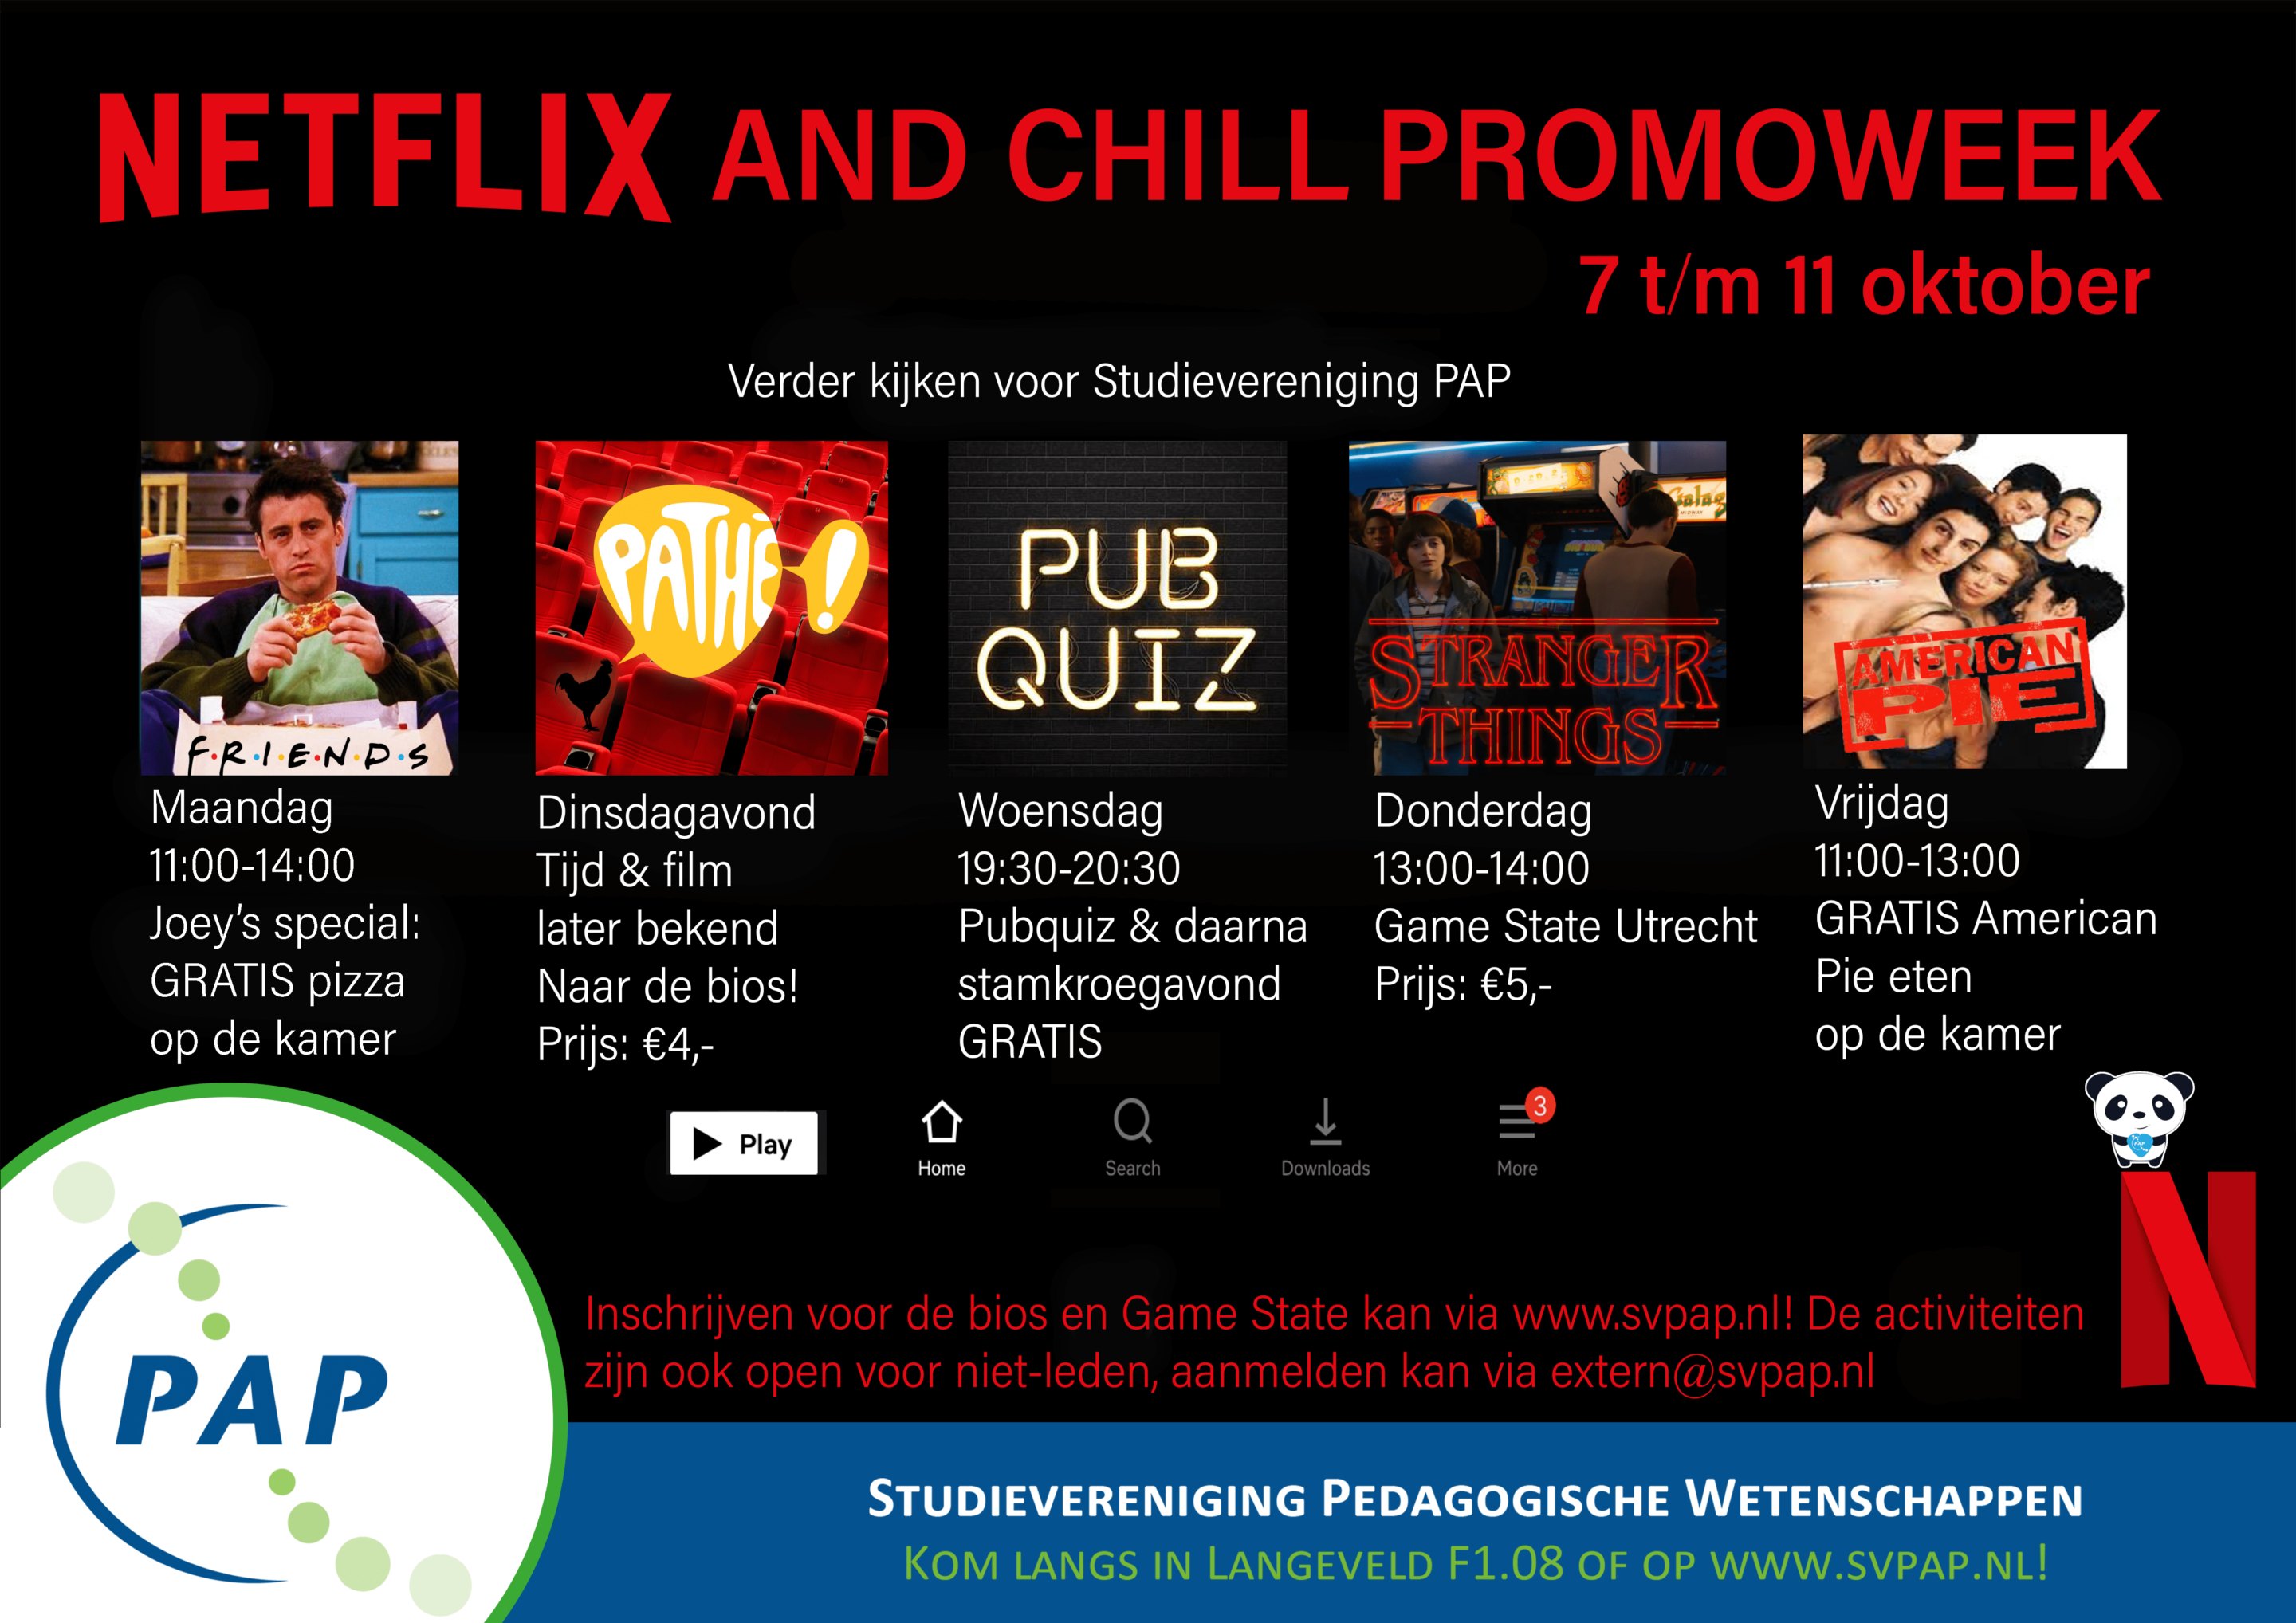 Promoweek 1: Netflix and chill